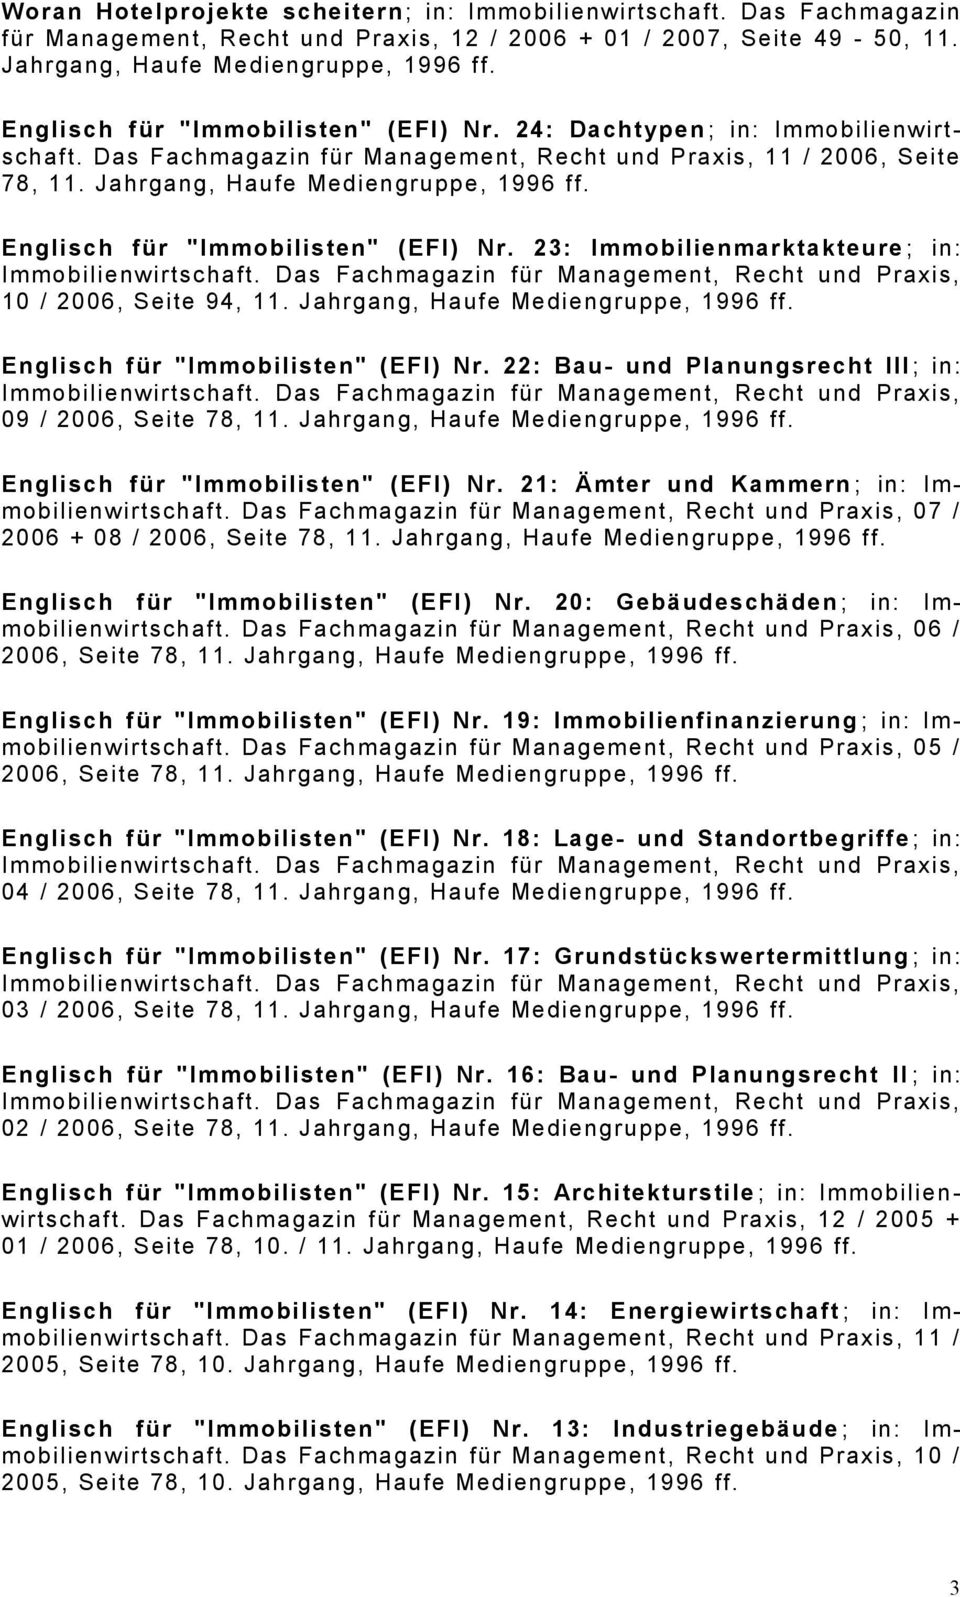 Englisch für "Immobilisten" (EFI) Nr. 23: Immobilienmarktakteure ; in: 10 / 2006, Seite 94, 11. Jahrgang, Haufe Mediengruppe, 1996 ff. Englisch für "Immobilisten" (EFI) Nr.